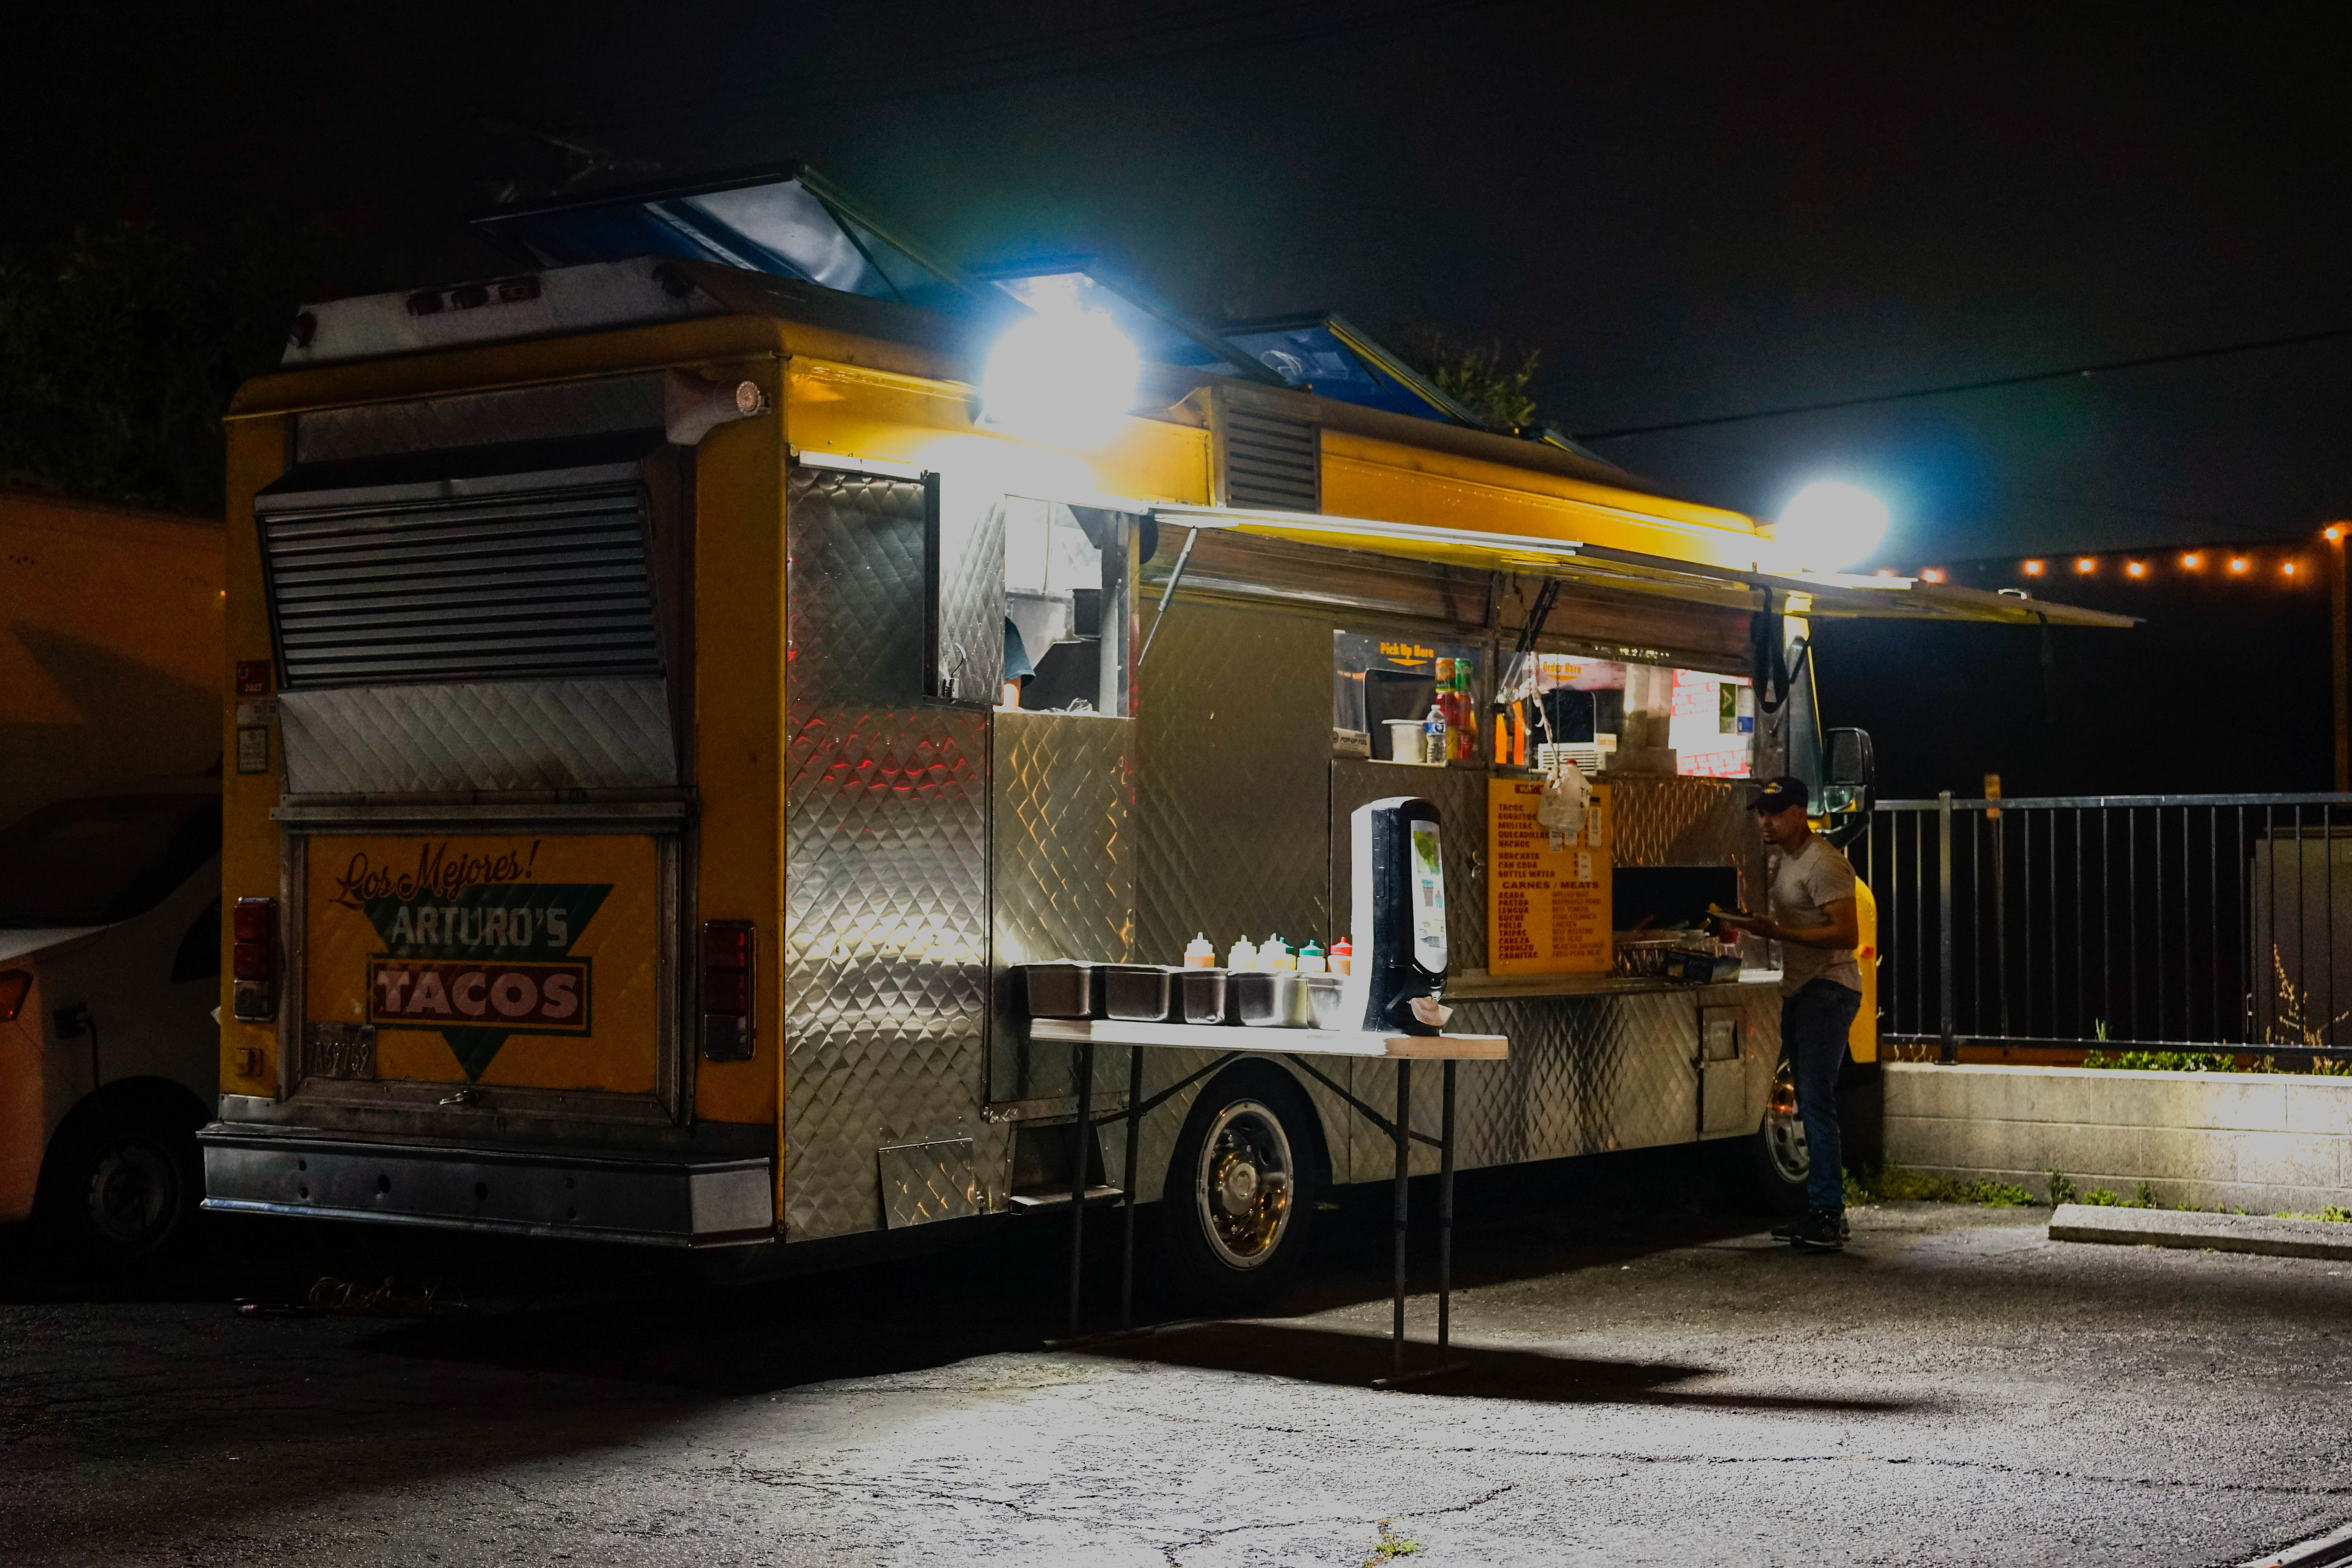 Review: Arturo’s Taco Truck